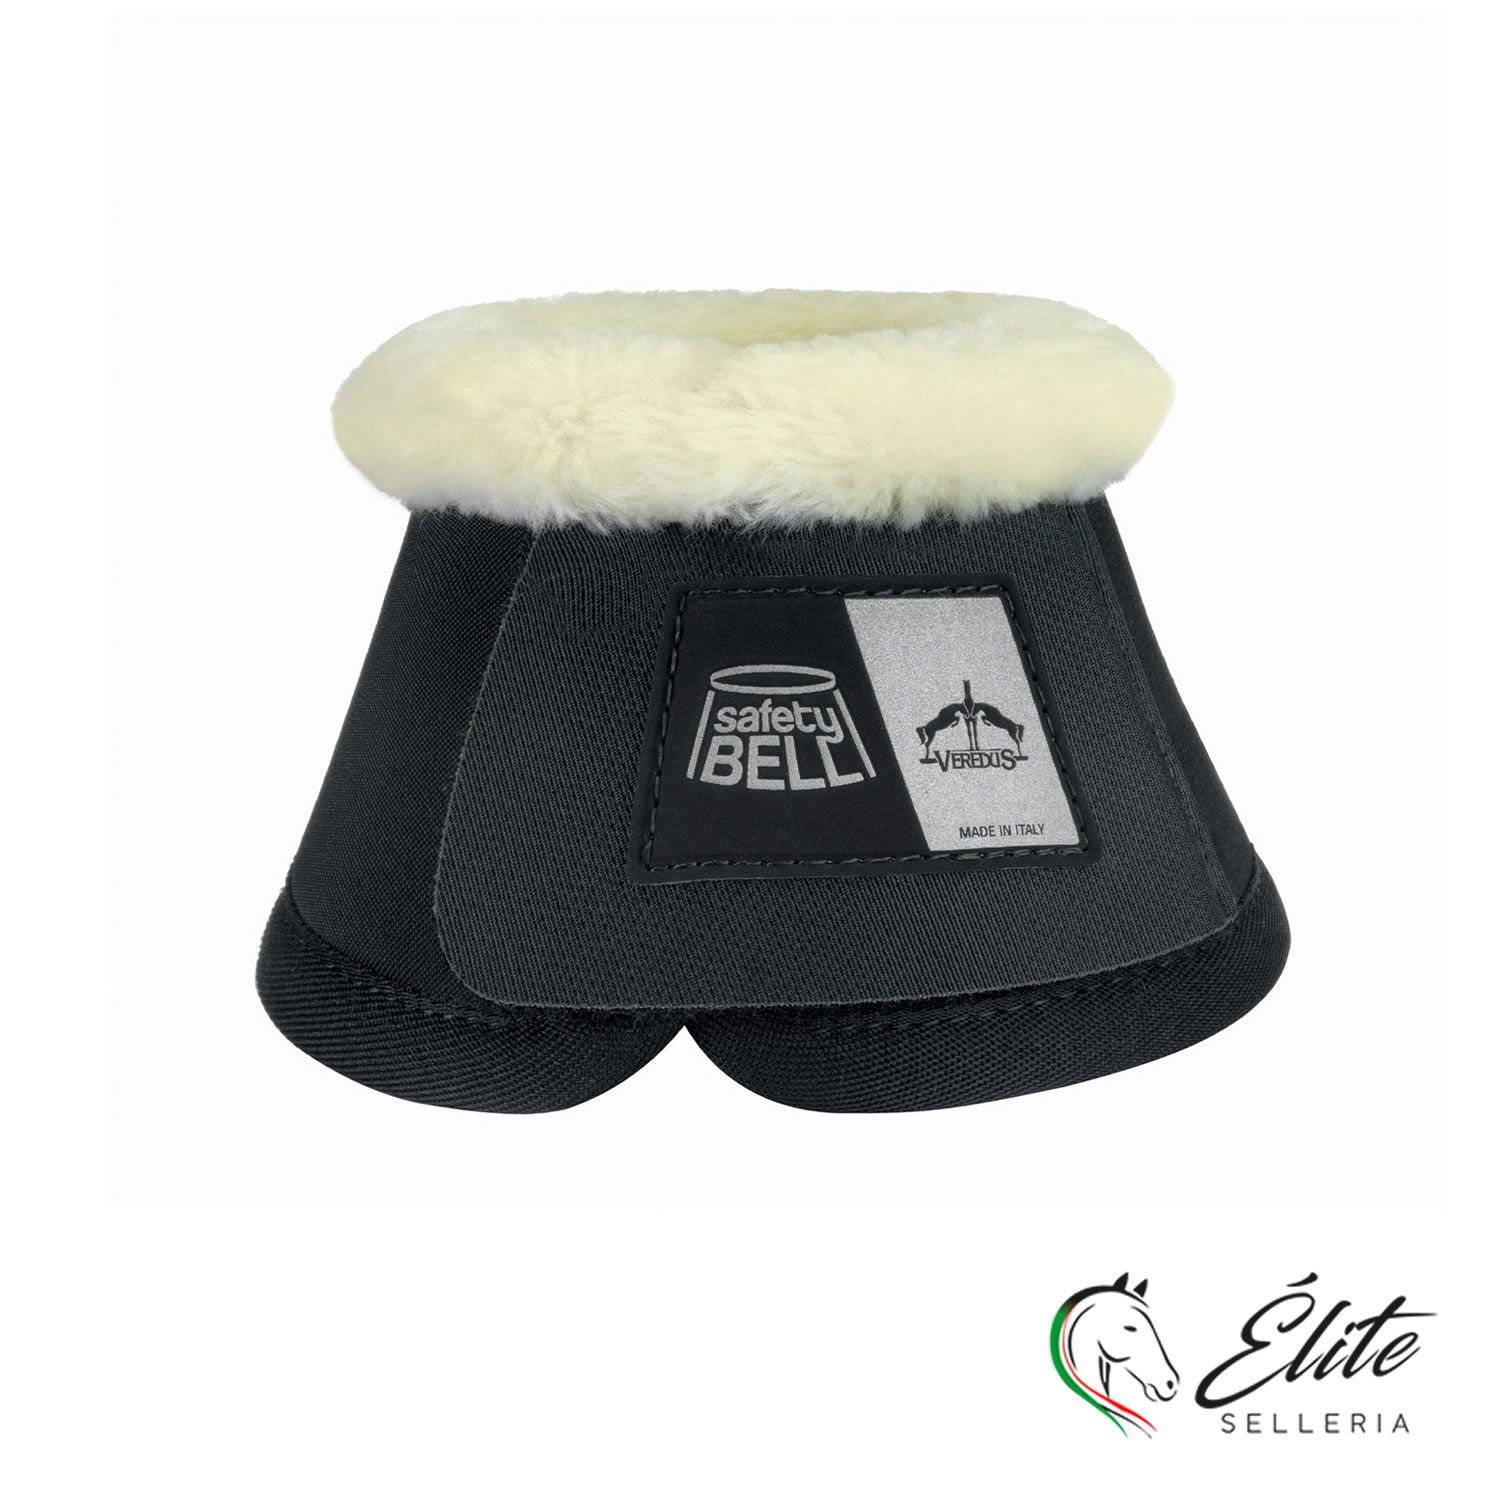 Vendita online Safety-Bell Light Save The Sheep Black - Selleria Élite del cavallo - Palermo - Sicilia- Italia